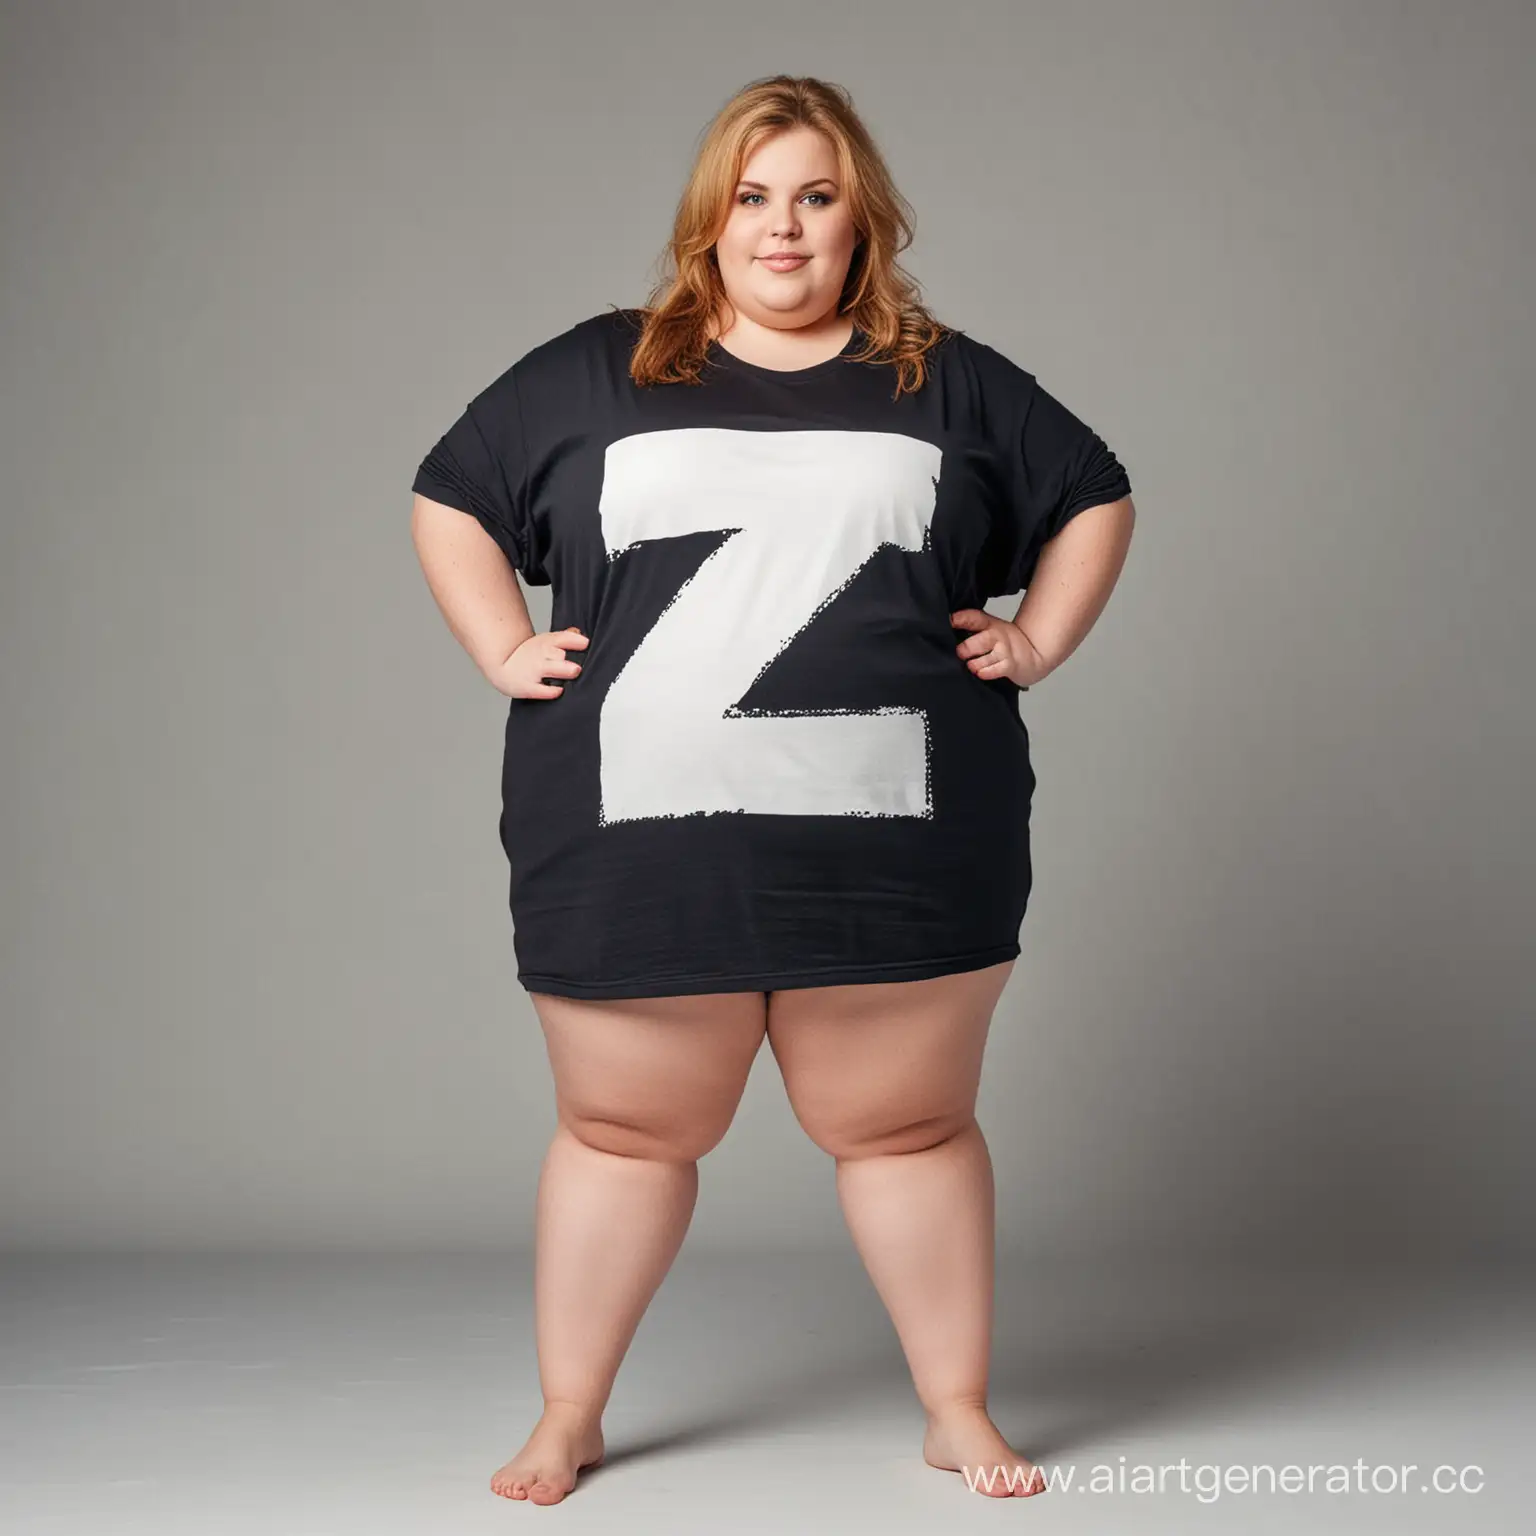 Огромная толстая девочка с футболкой с буквой Z